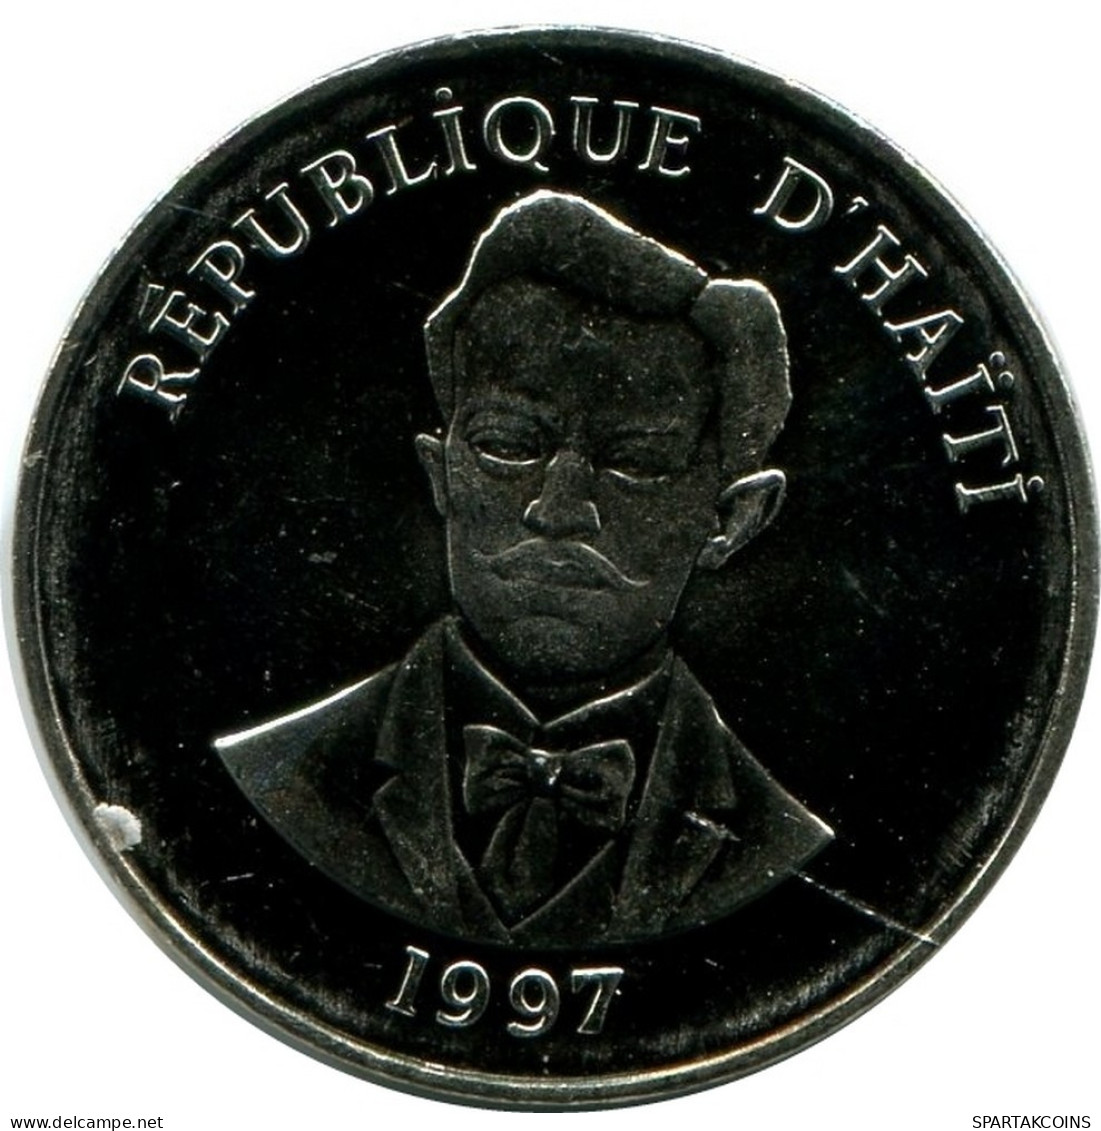 5 CENTIMES 1997 HAITI UNC Coin #M10396.U.A - Haiti